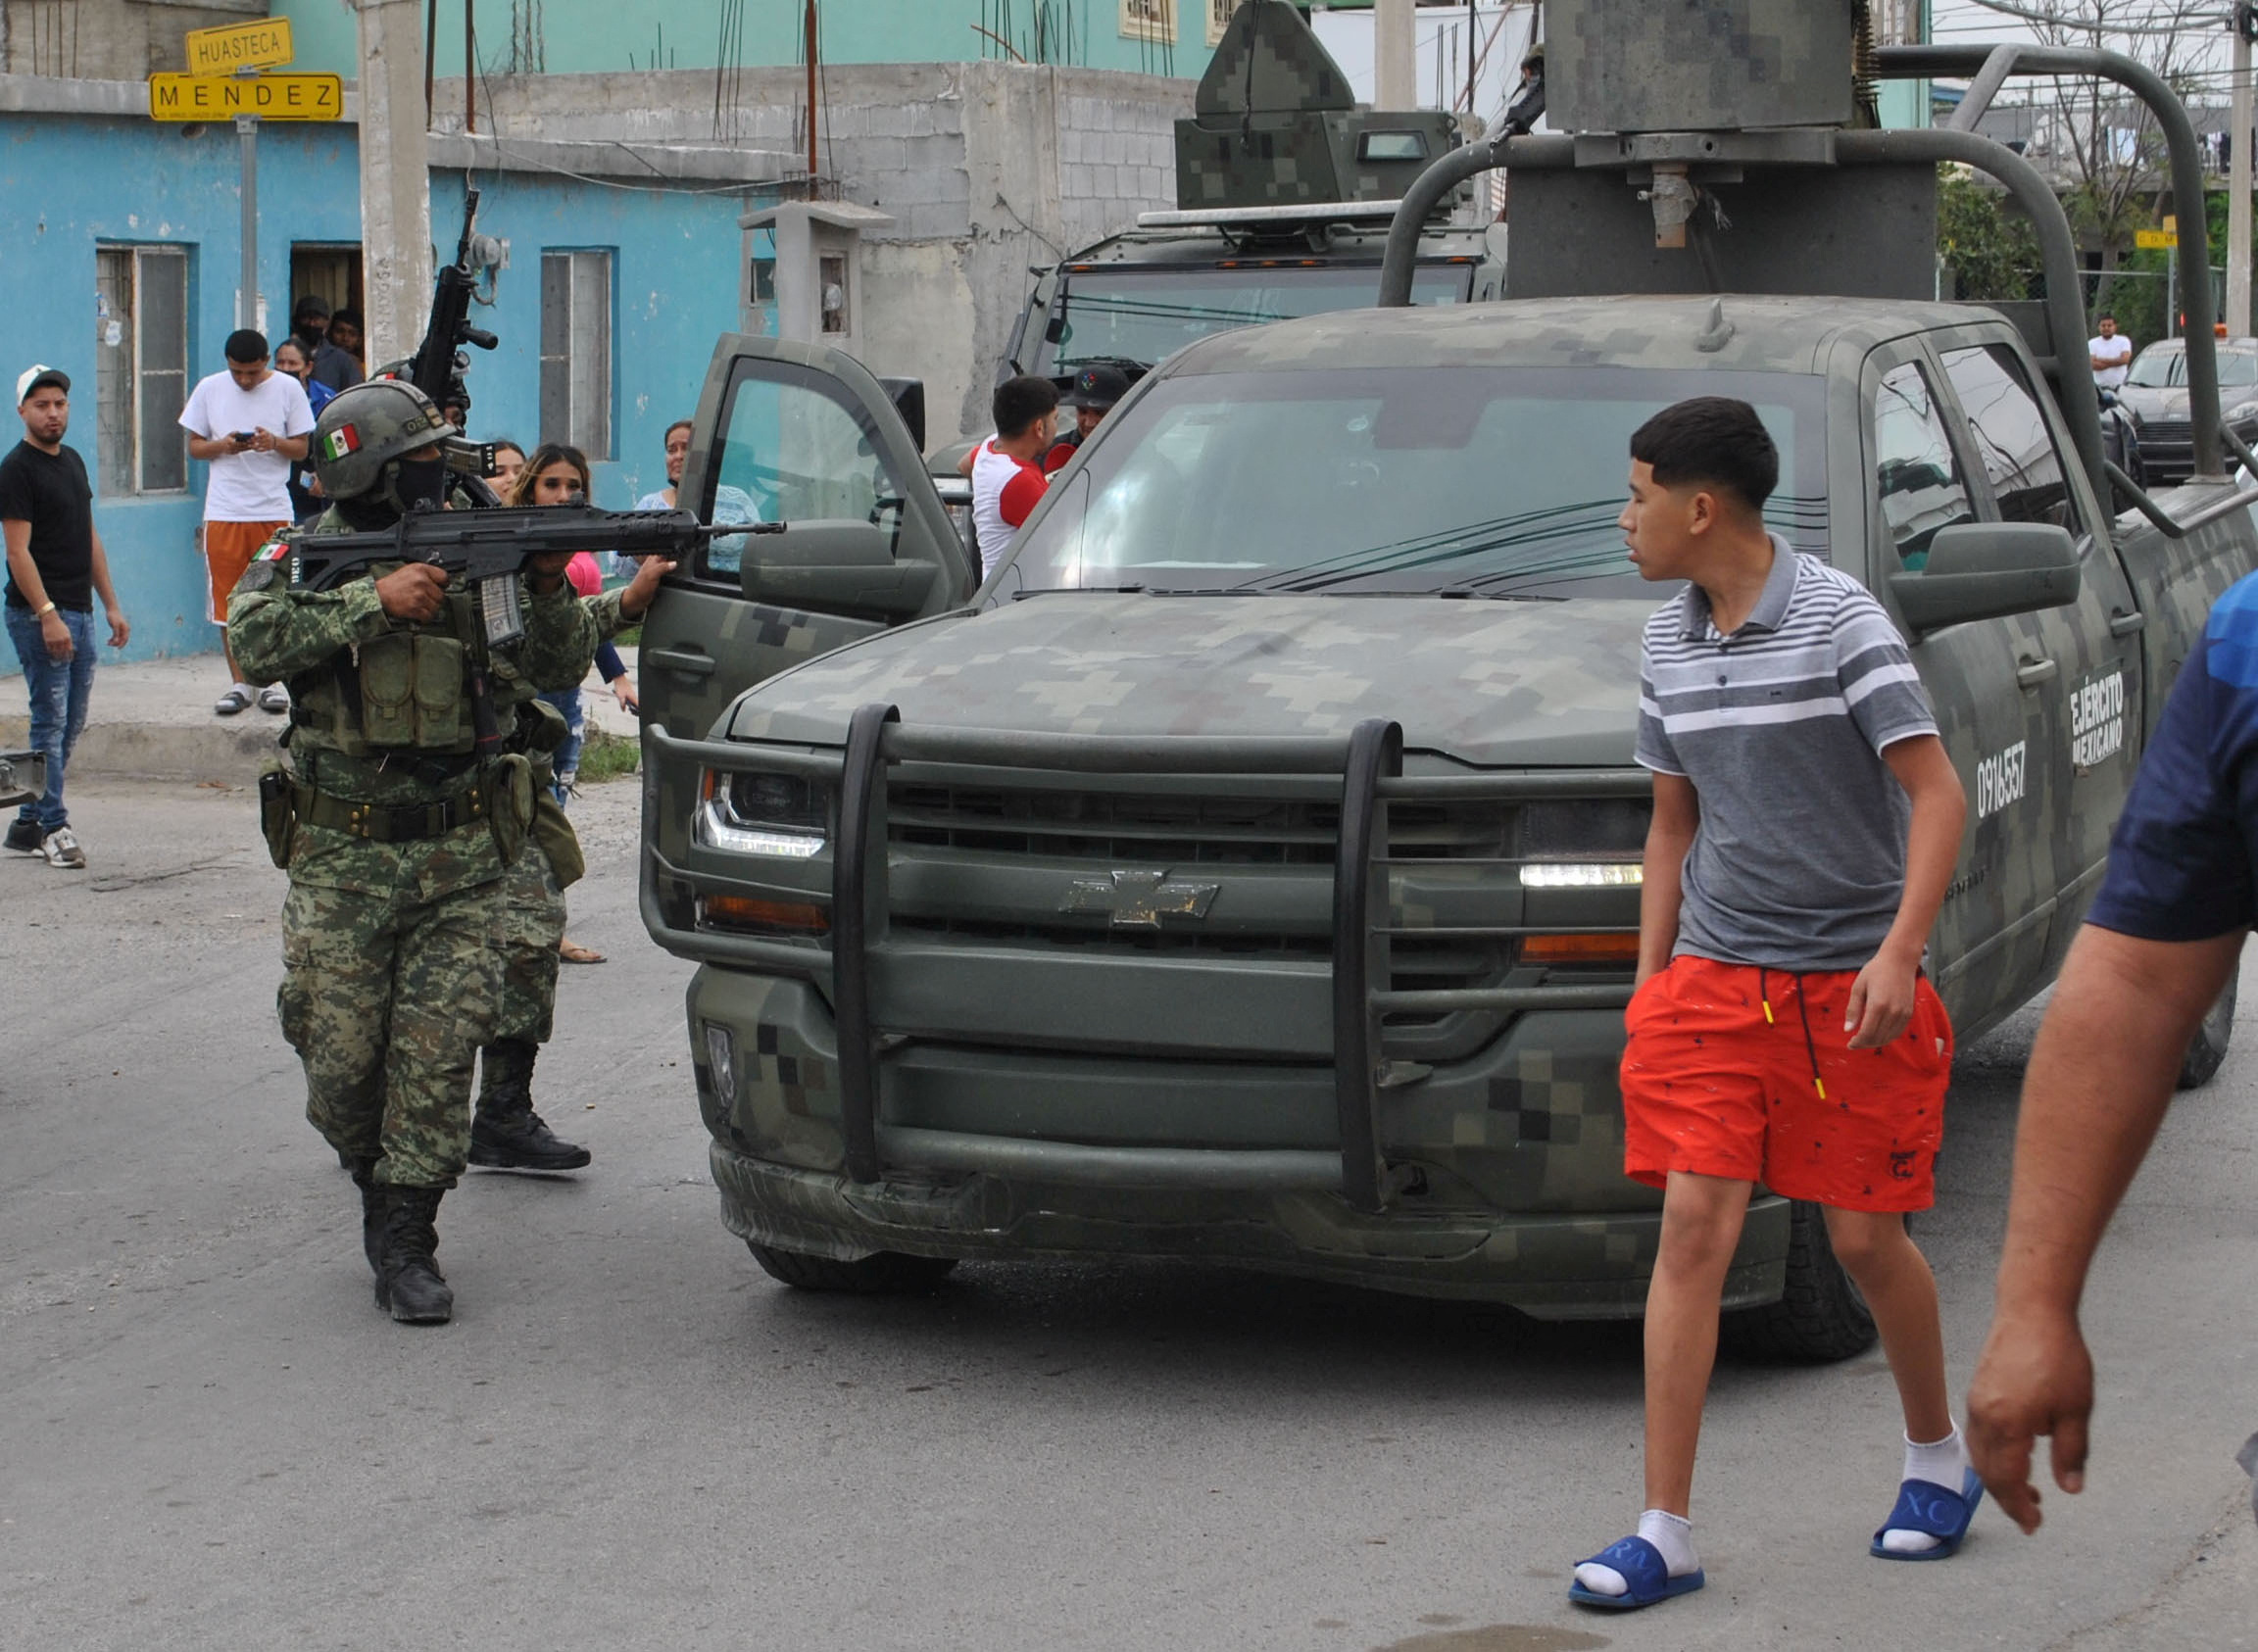 La presunta ejecución extrajudicial generó indignación entre los pobladores. (REUTERS/Jasiel Rubio)